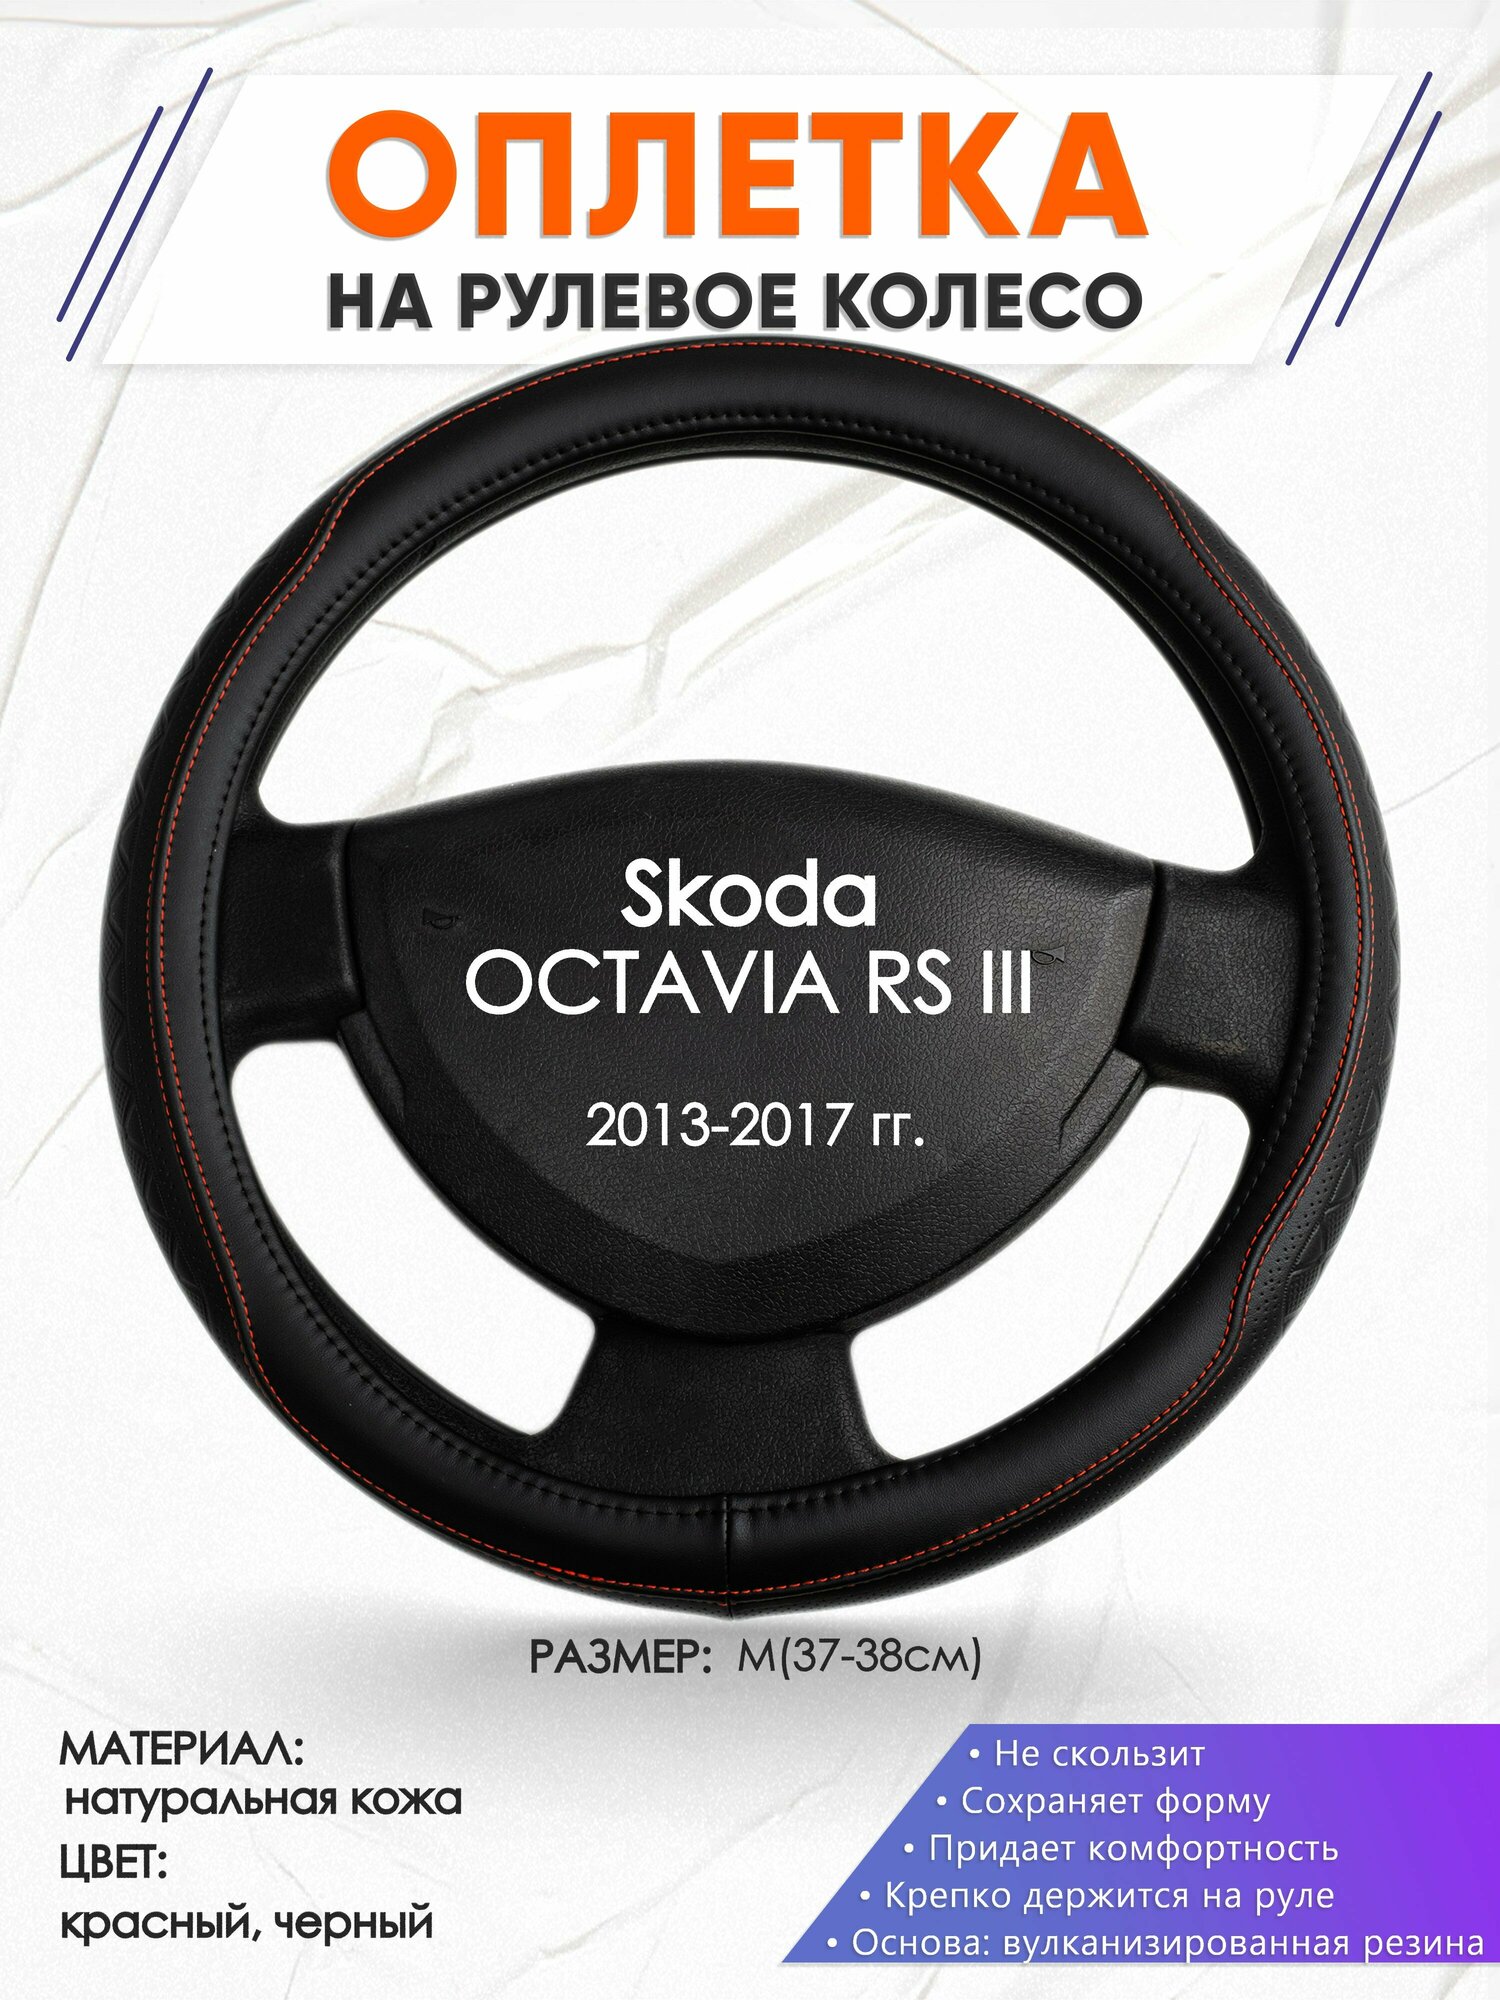 Оплетка наруль для Skoda OCTAVIA RS III(Шкода Октавия) 2013-2017 годов выпуска, размер M(37-38см), Натуральная кожа 90